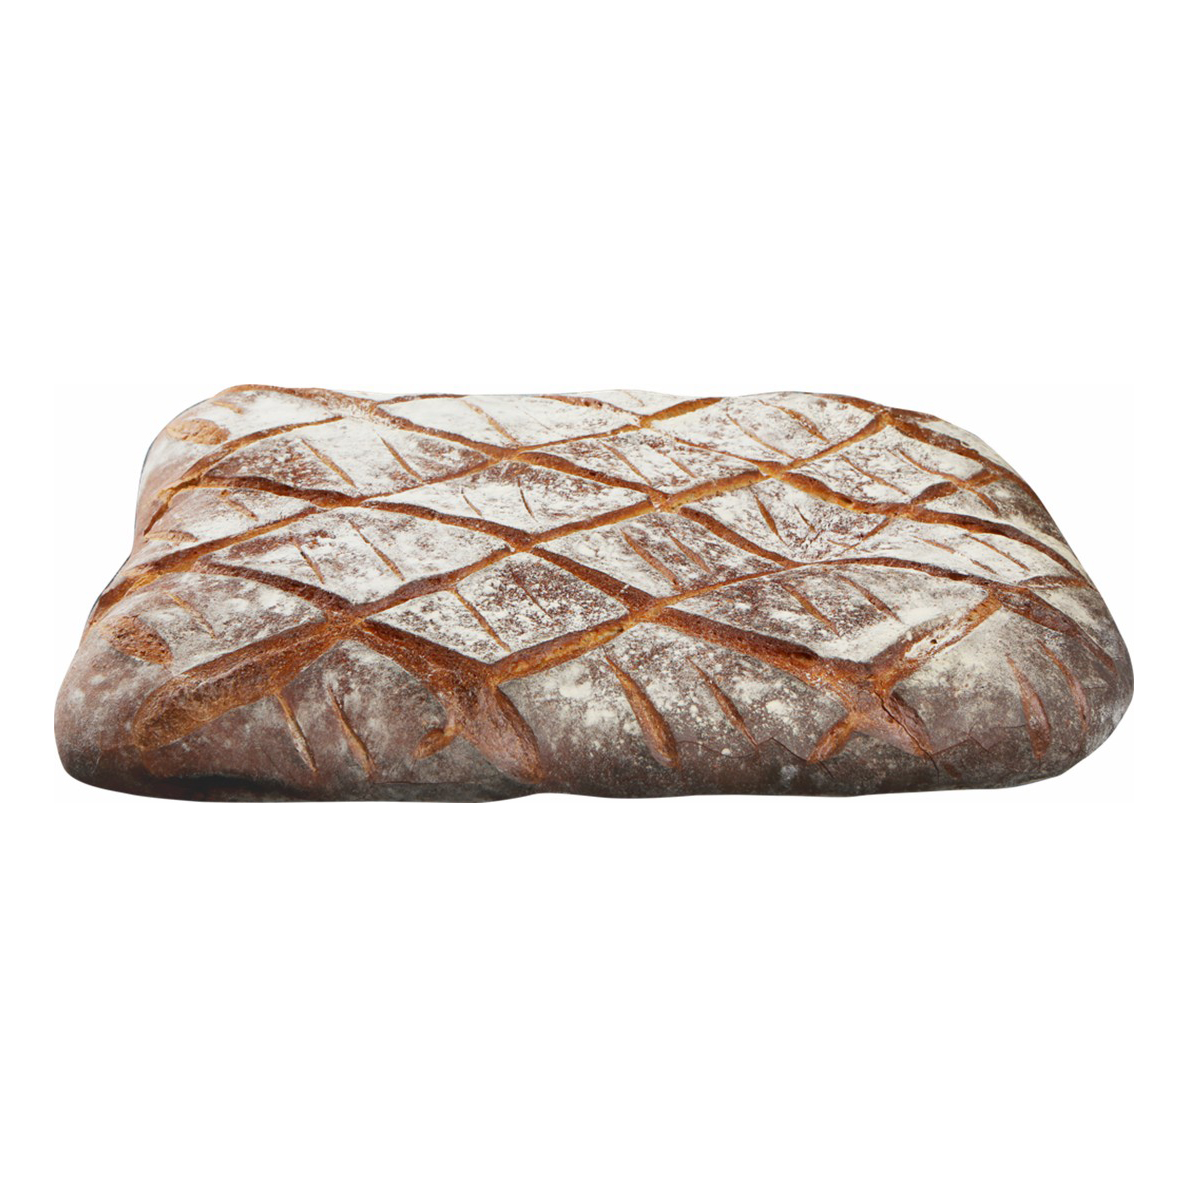 Хлеб белый Лента Купеческий на закваске пшеничный 1000 г